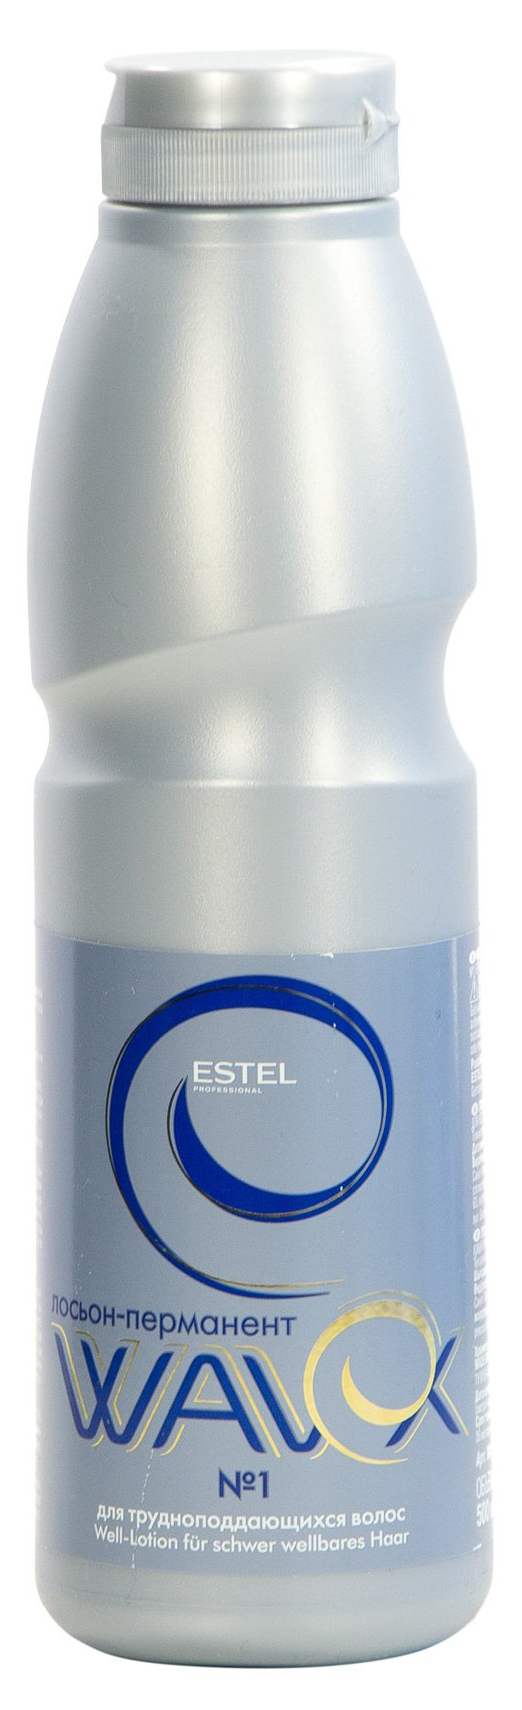 Лосьон-перманент Estel Wavex 500 мл №1 estel professional набор для химической завивки для окрашенных волос niagara